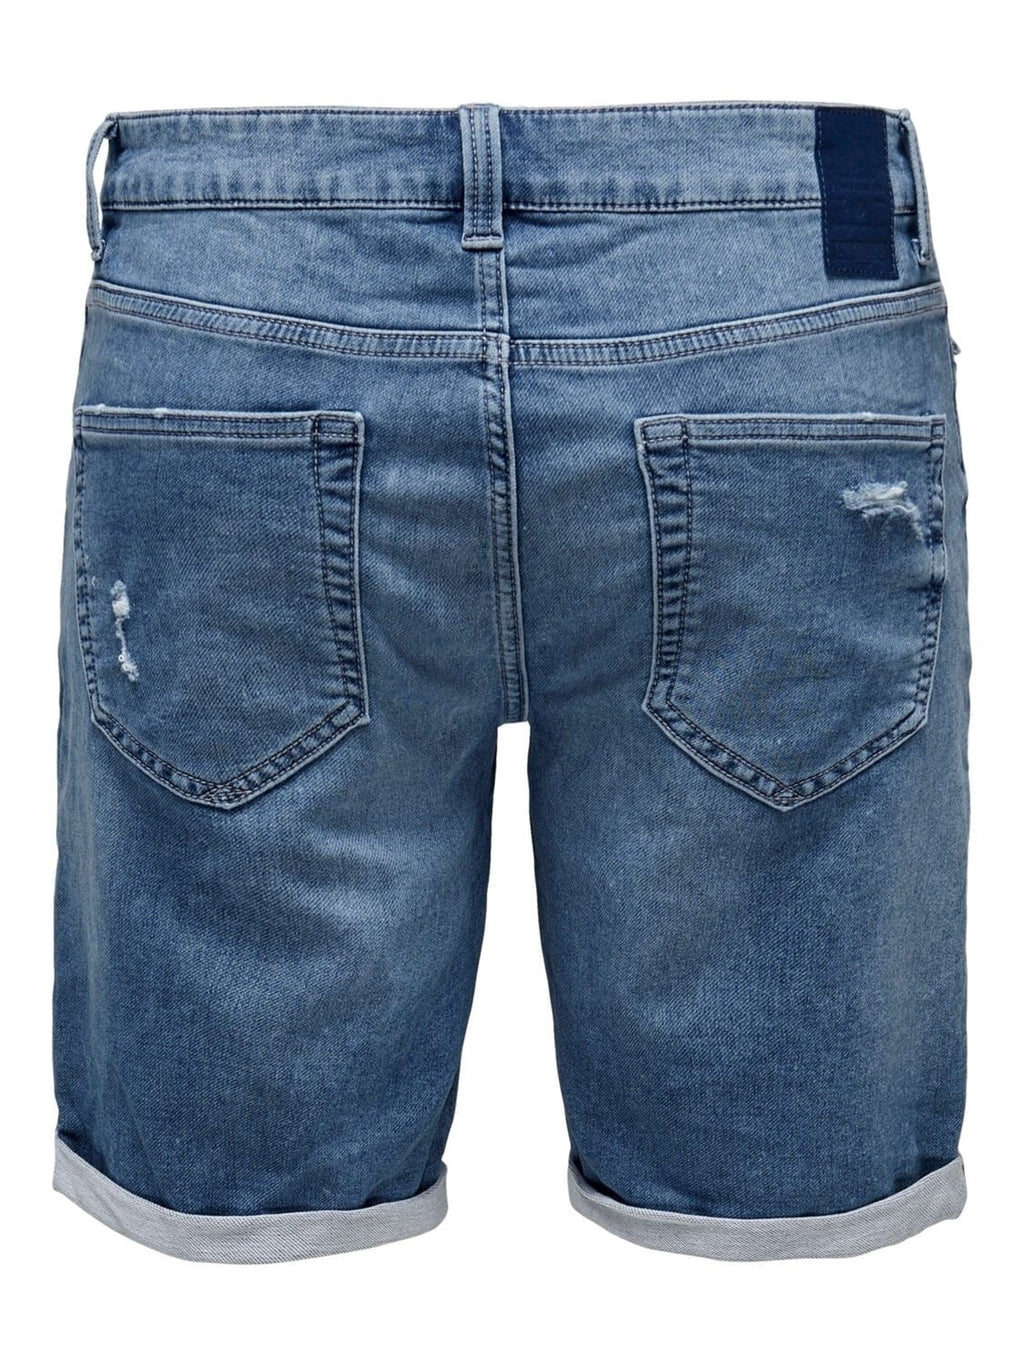 Traper kratke hlače - plavi traper (s rastezanjem)